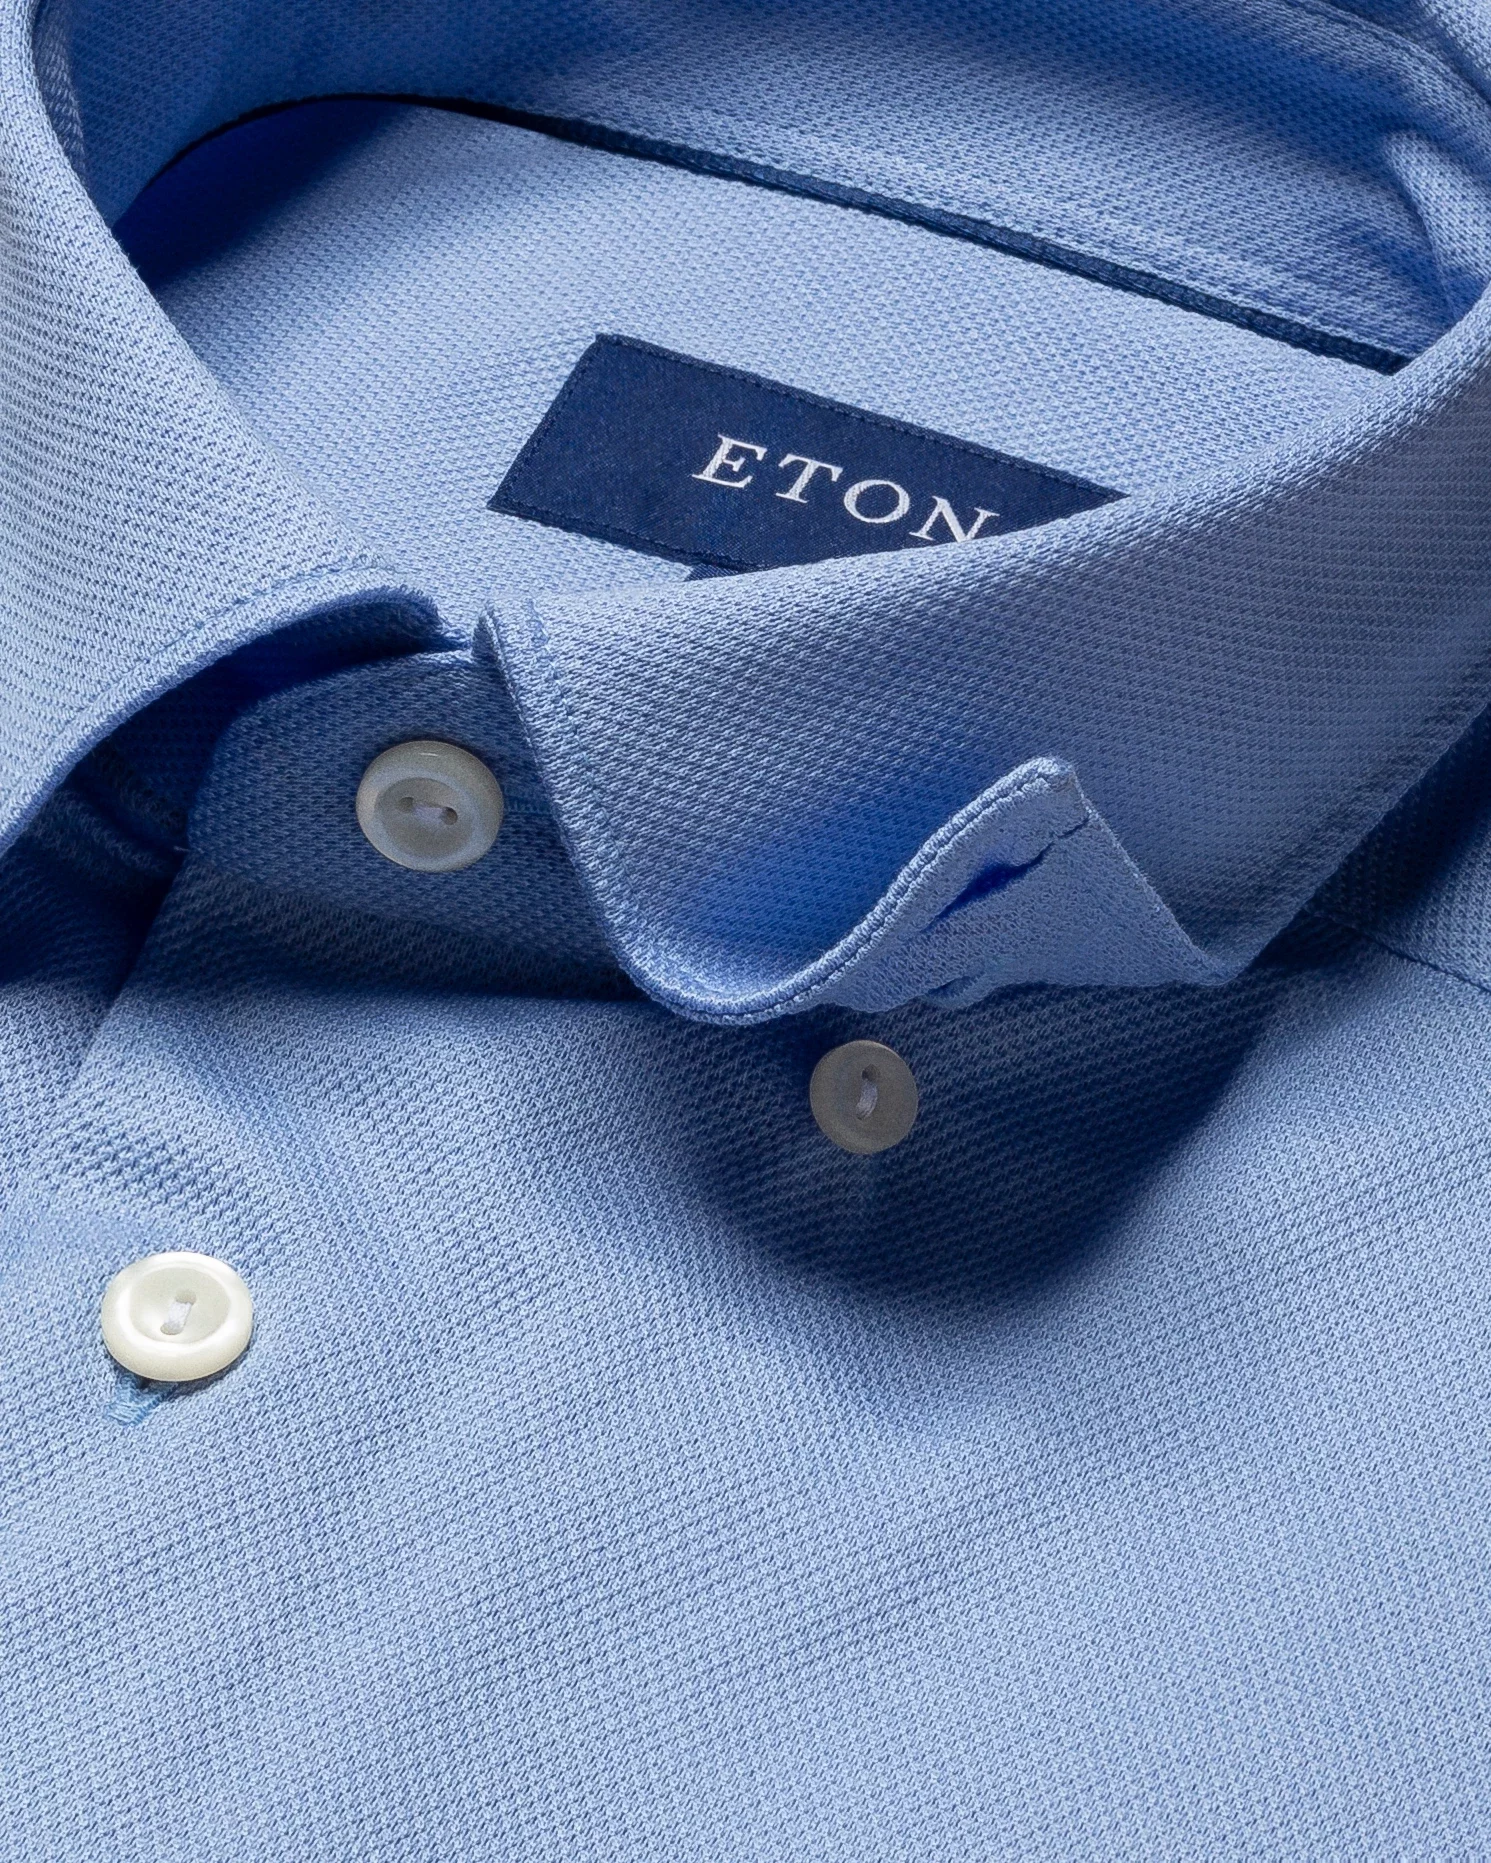 Eton - blue polo shirt